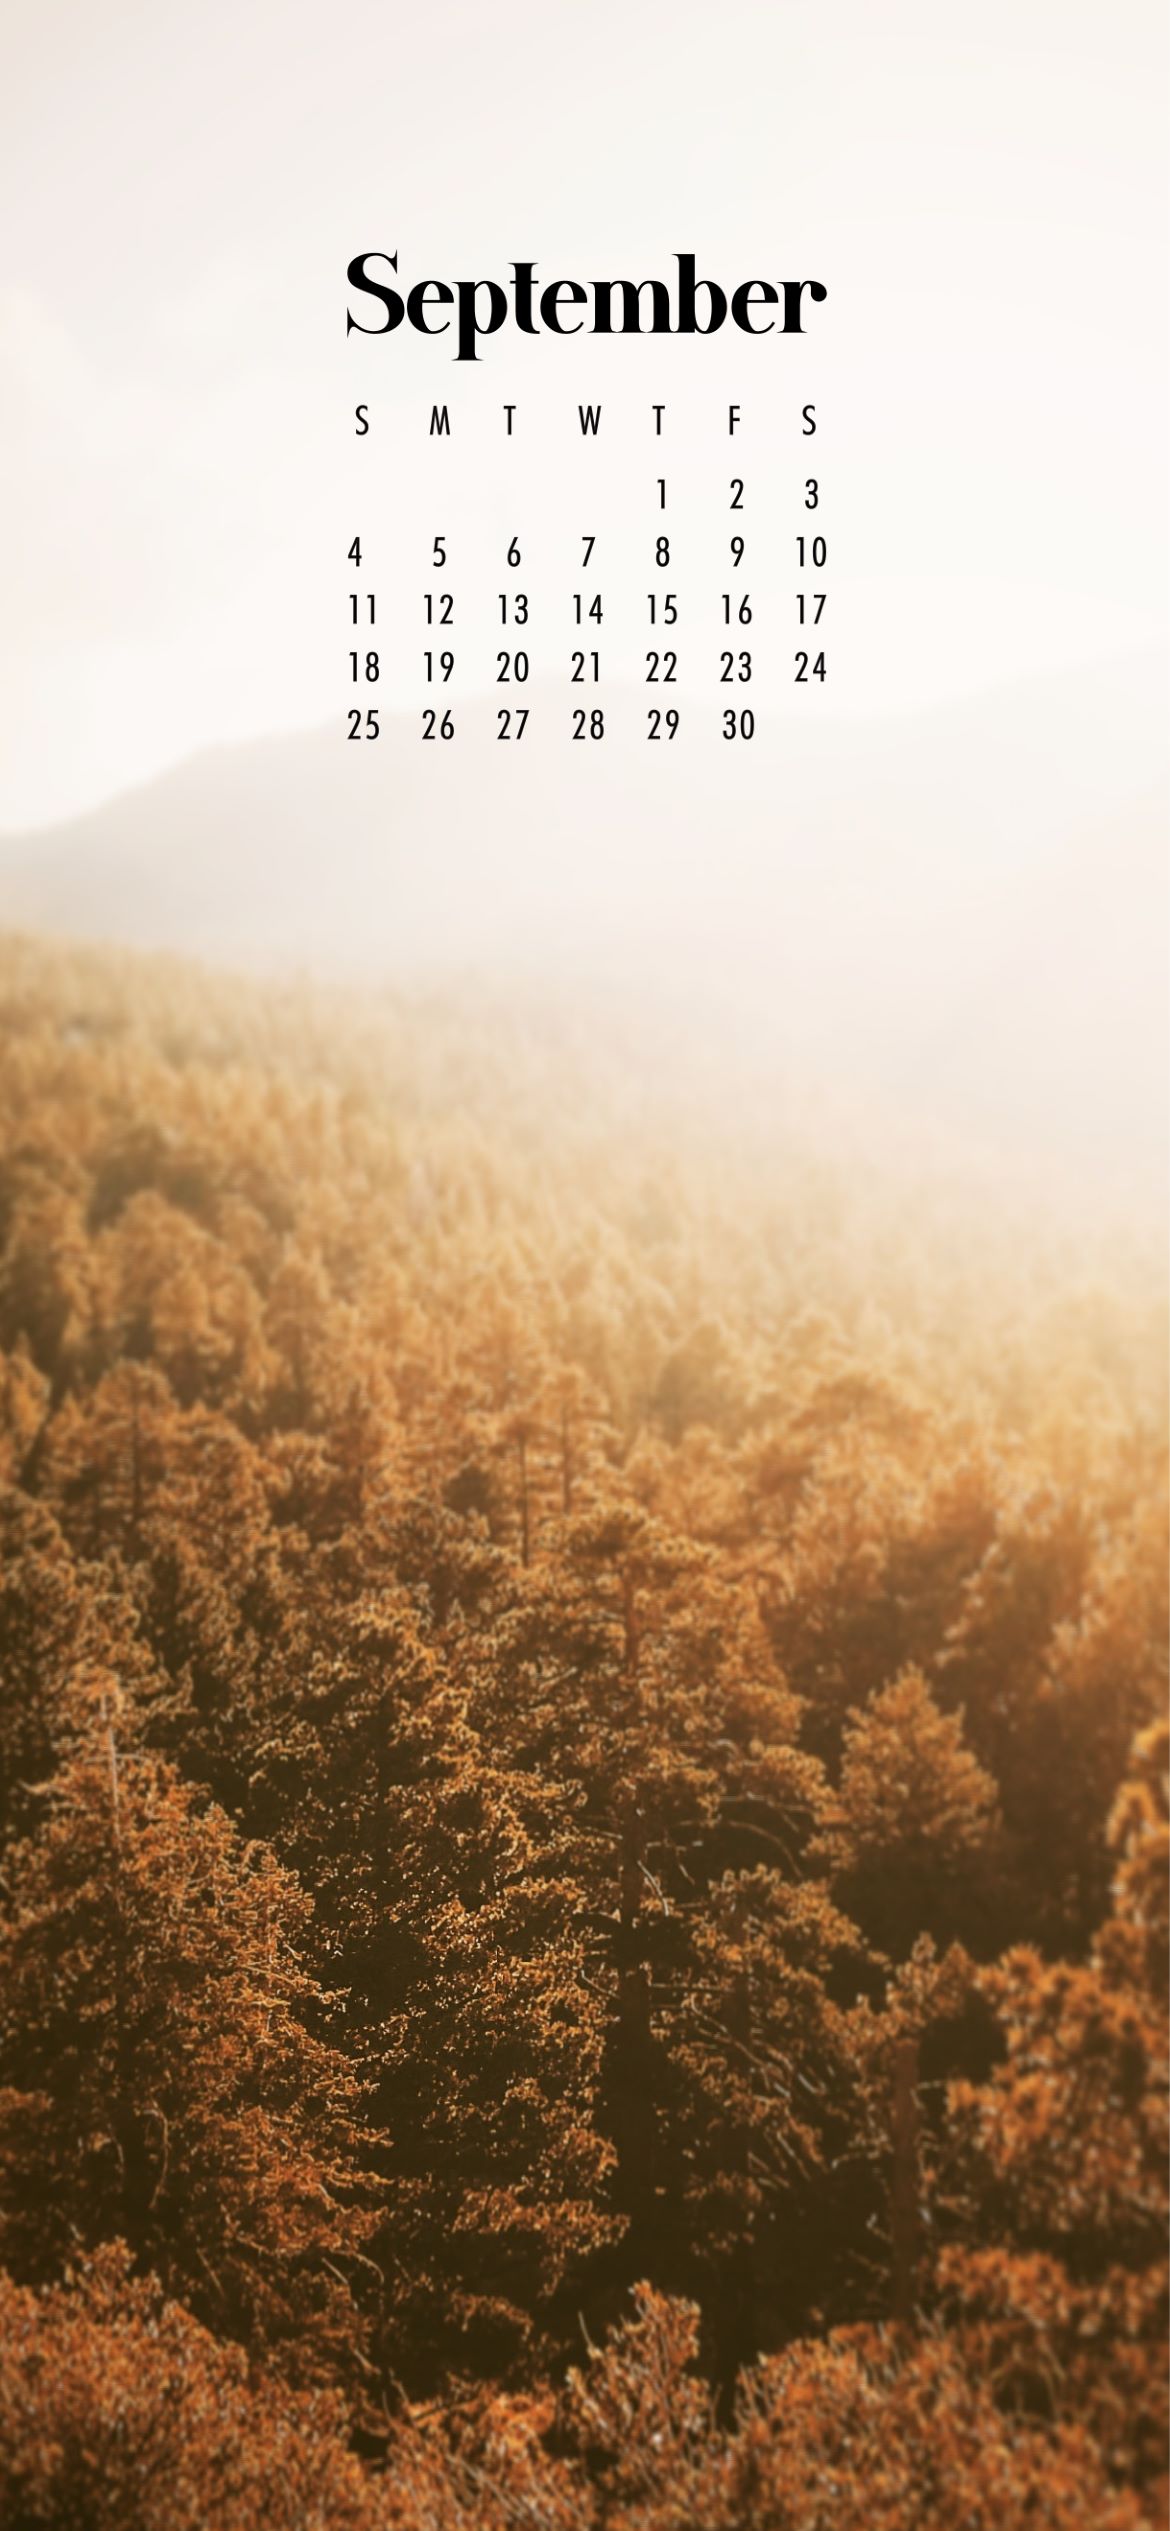 September Calendar Wallpaper - 38 Best Desktop & Phone Backgrounds